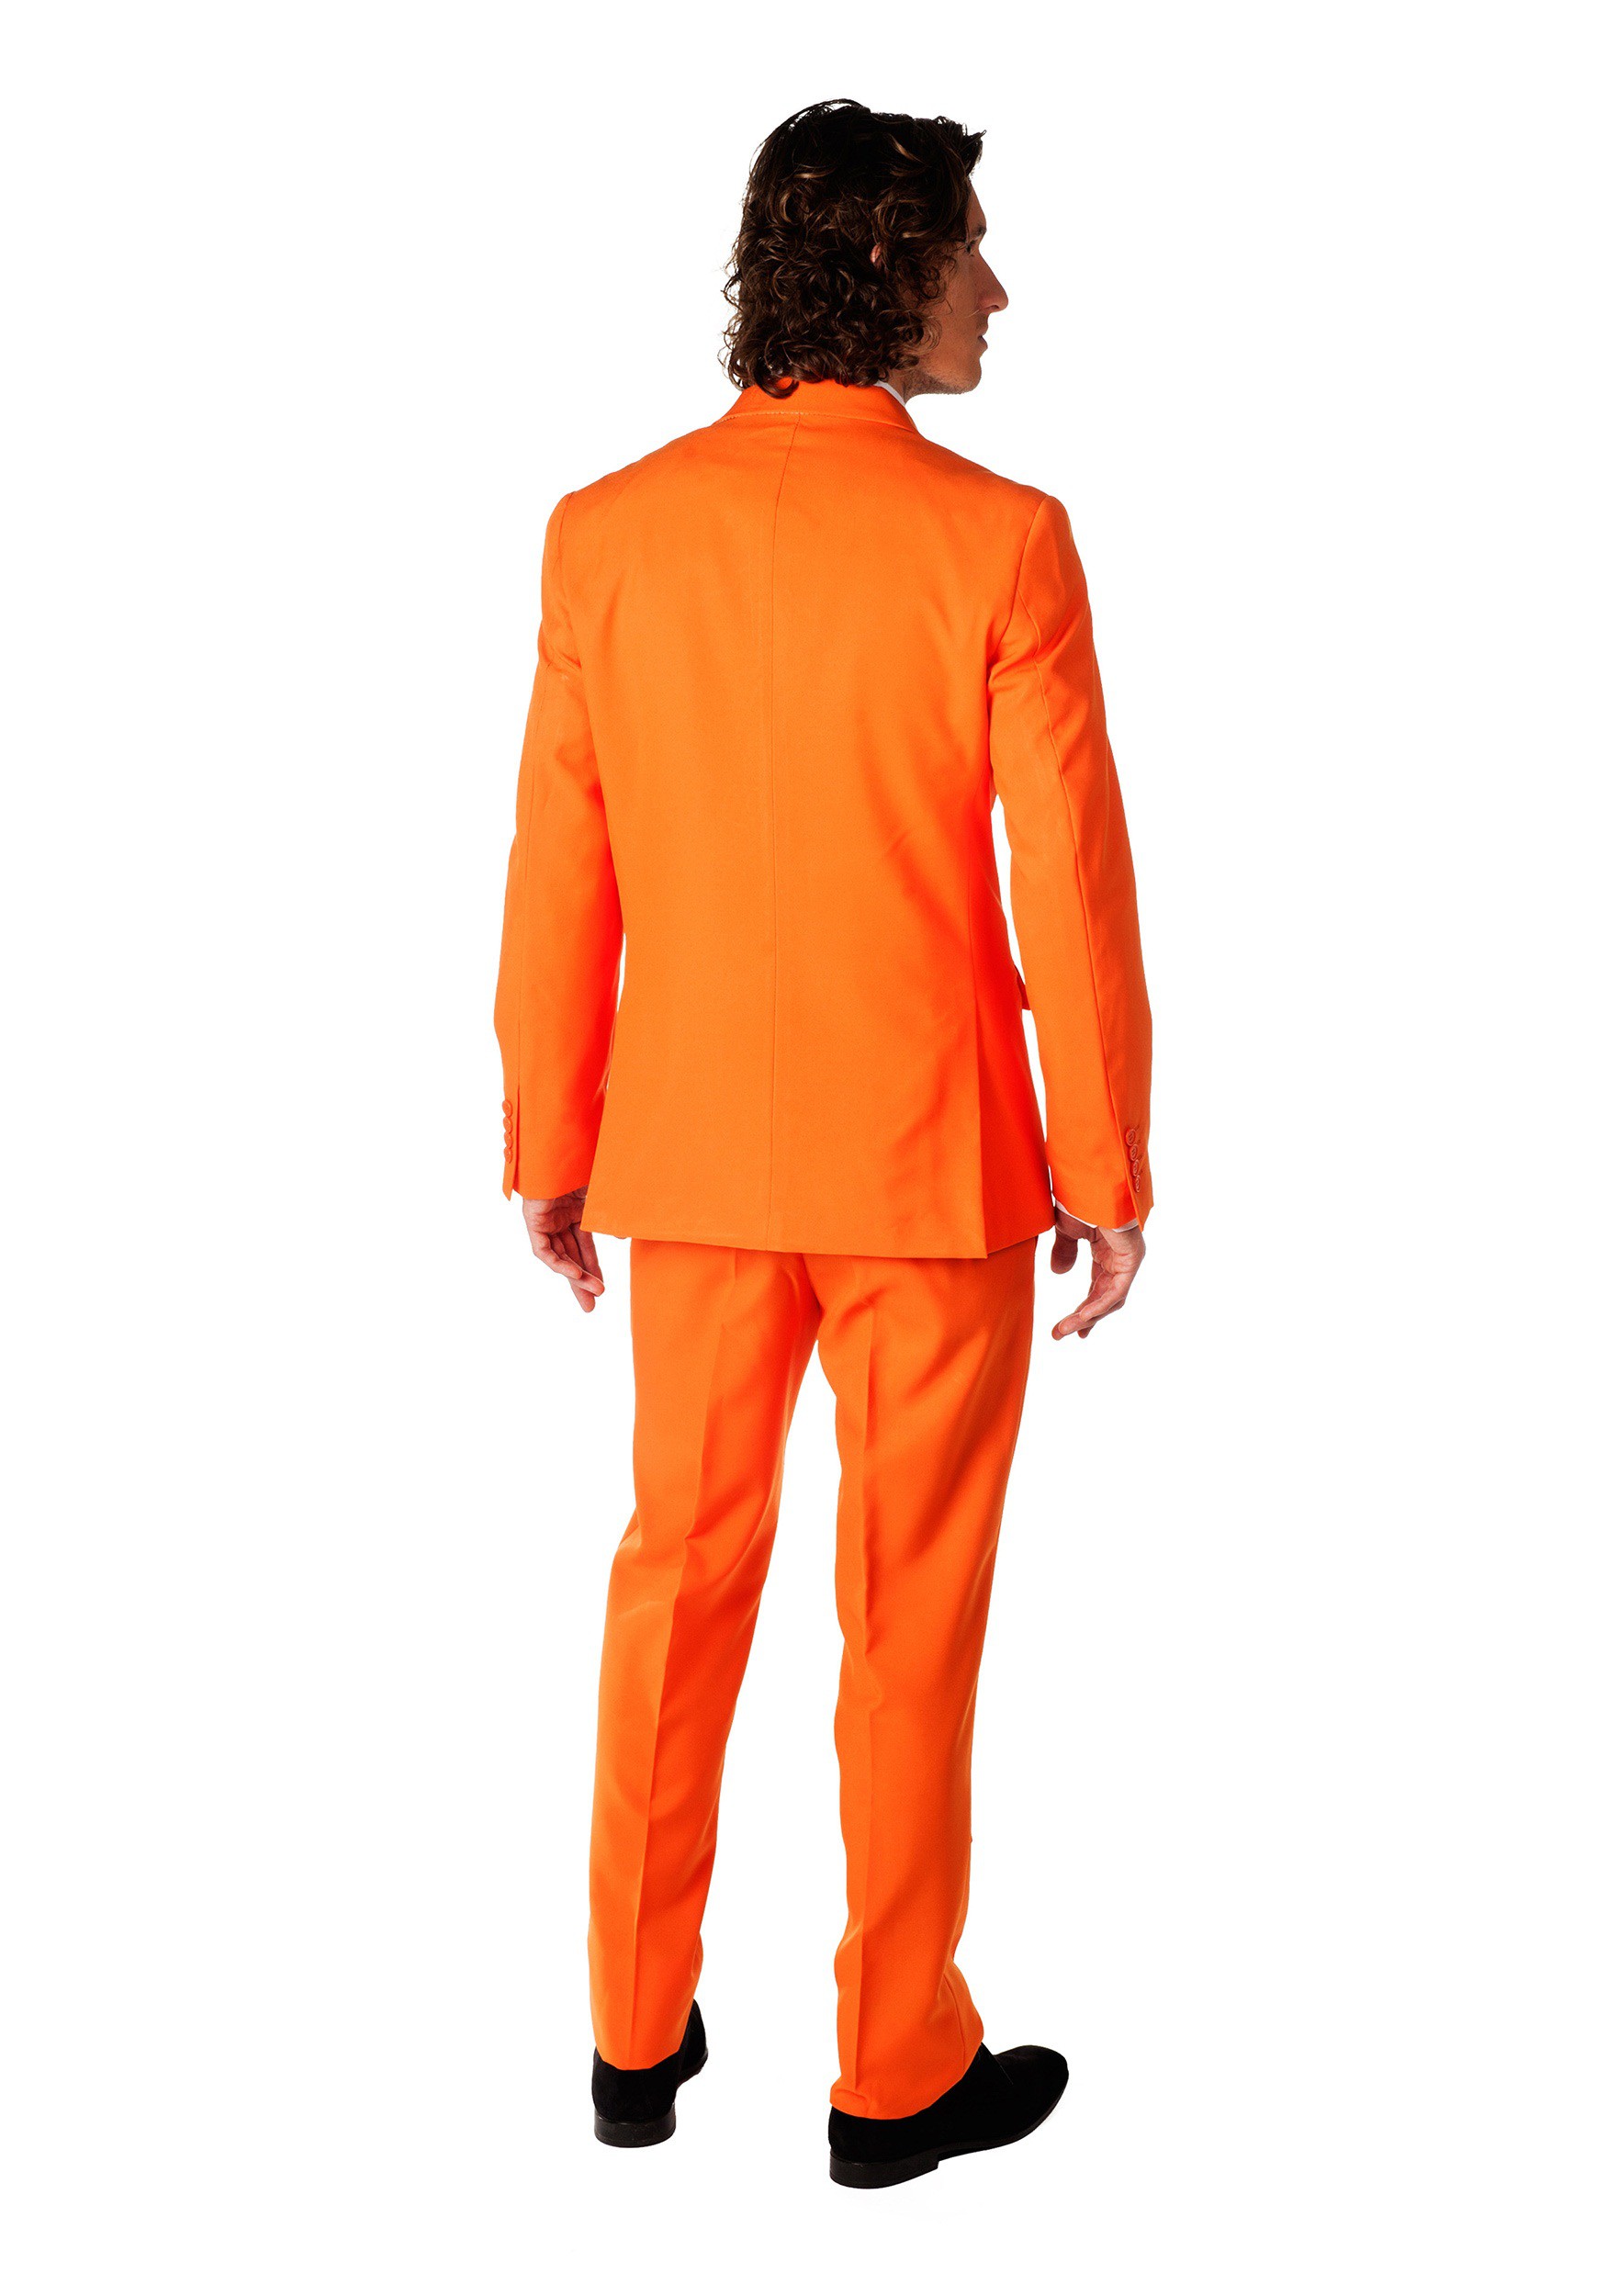 Men's OppoSuits Orange Costume Suit